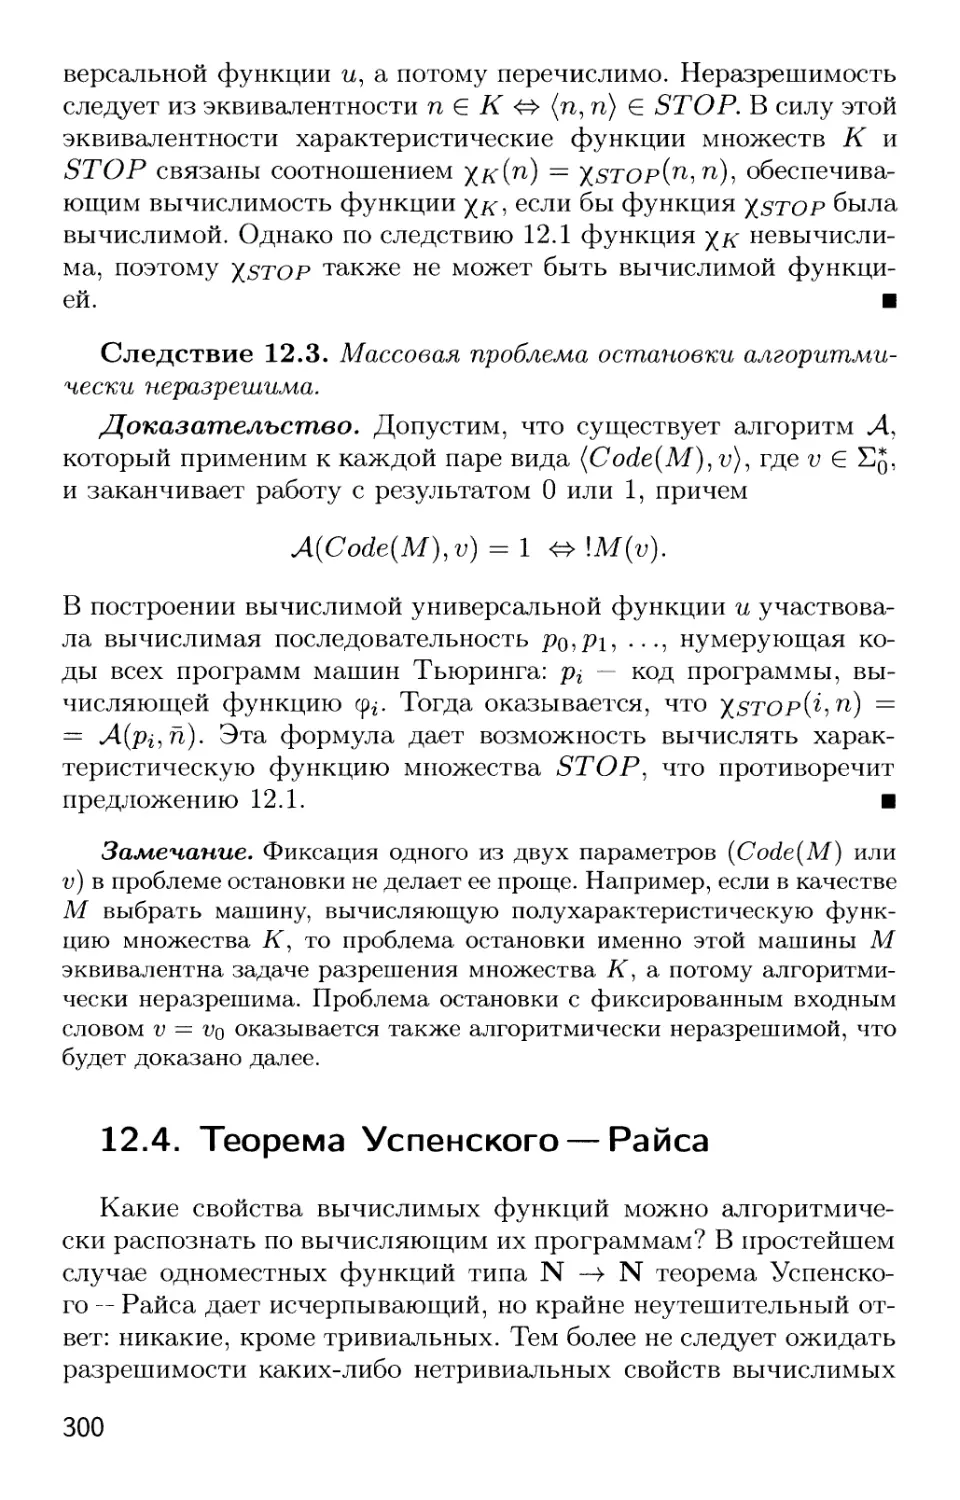 12.4. Теорема Успенского — Райса